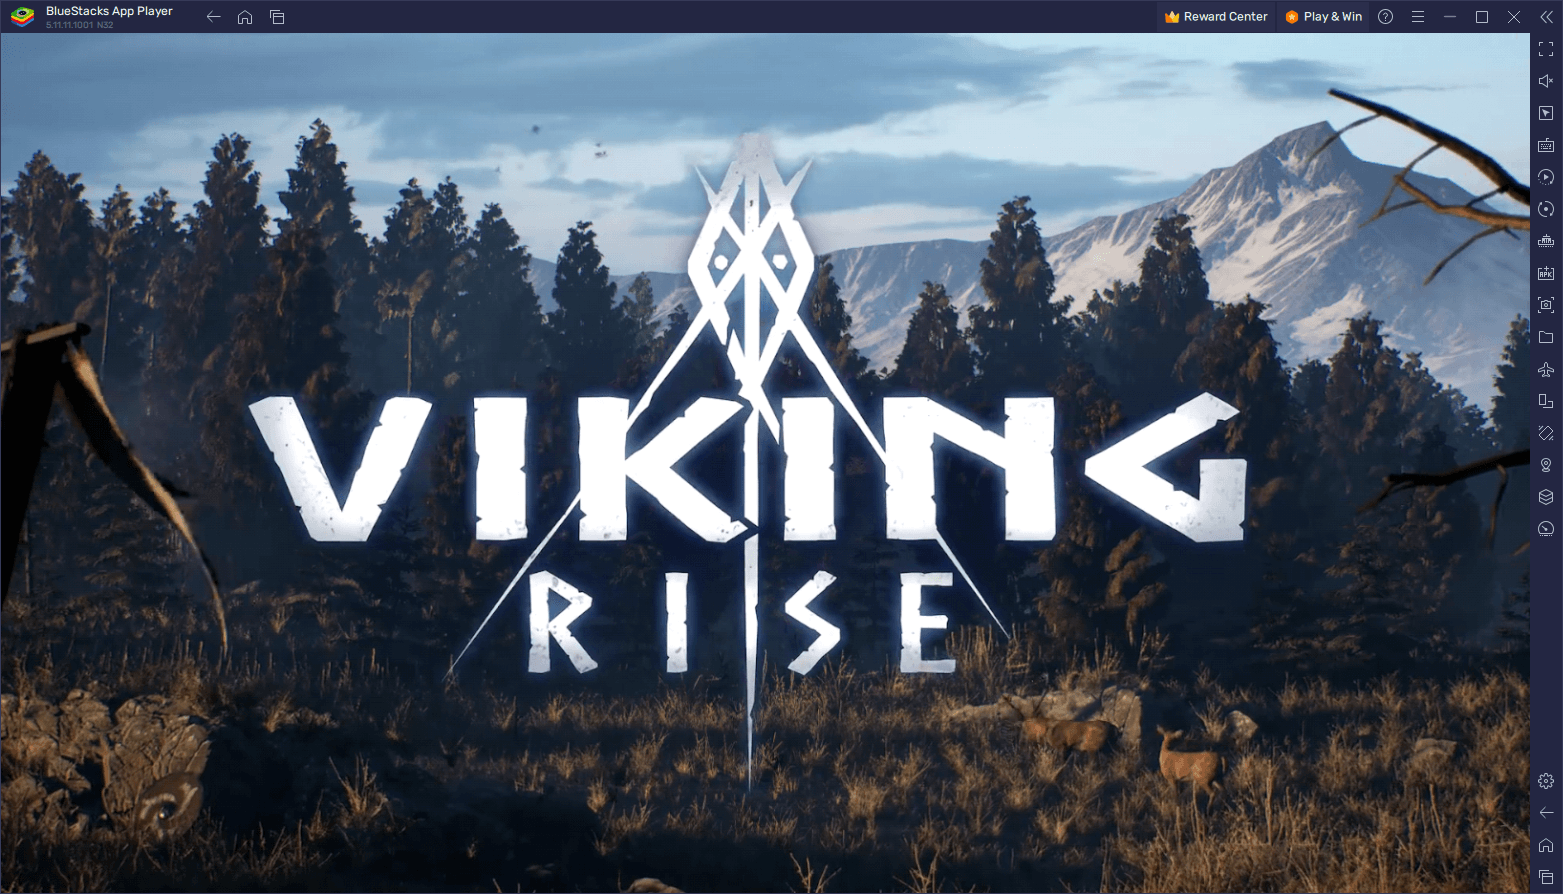 Viking Rise Review - Ein neues Handyspiel mit atemberaubender Grafik und seidenweicher Performance